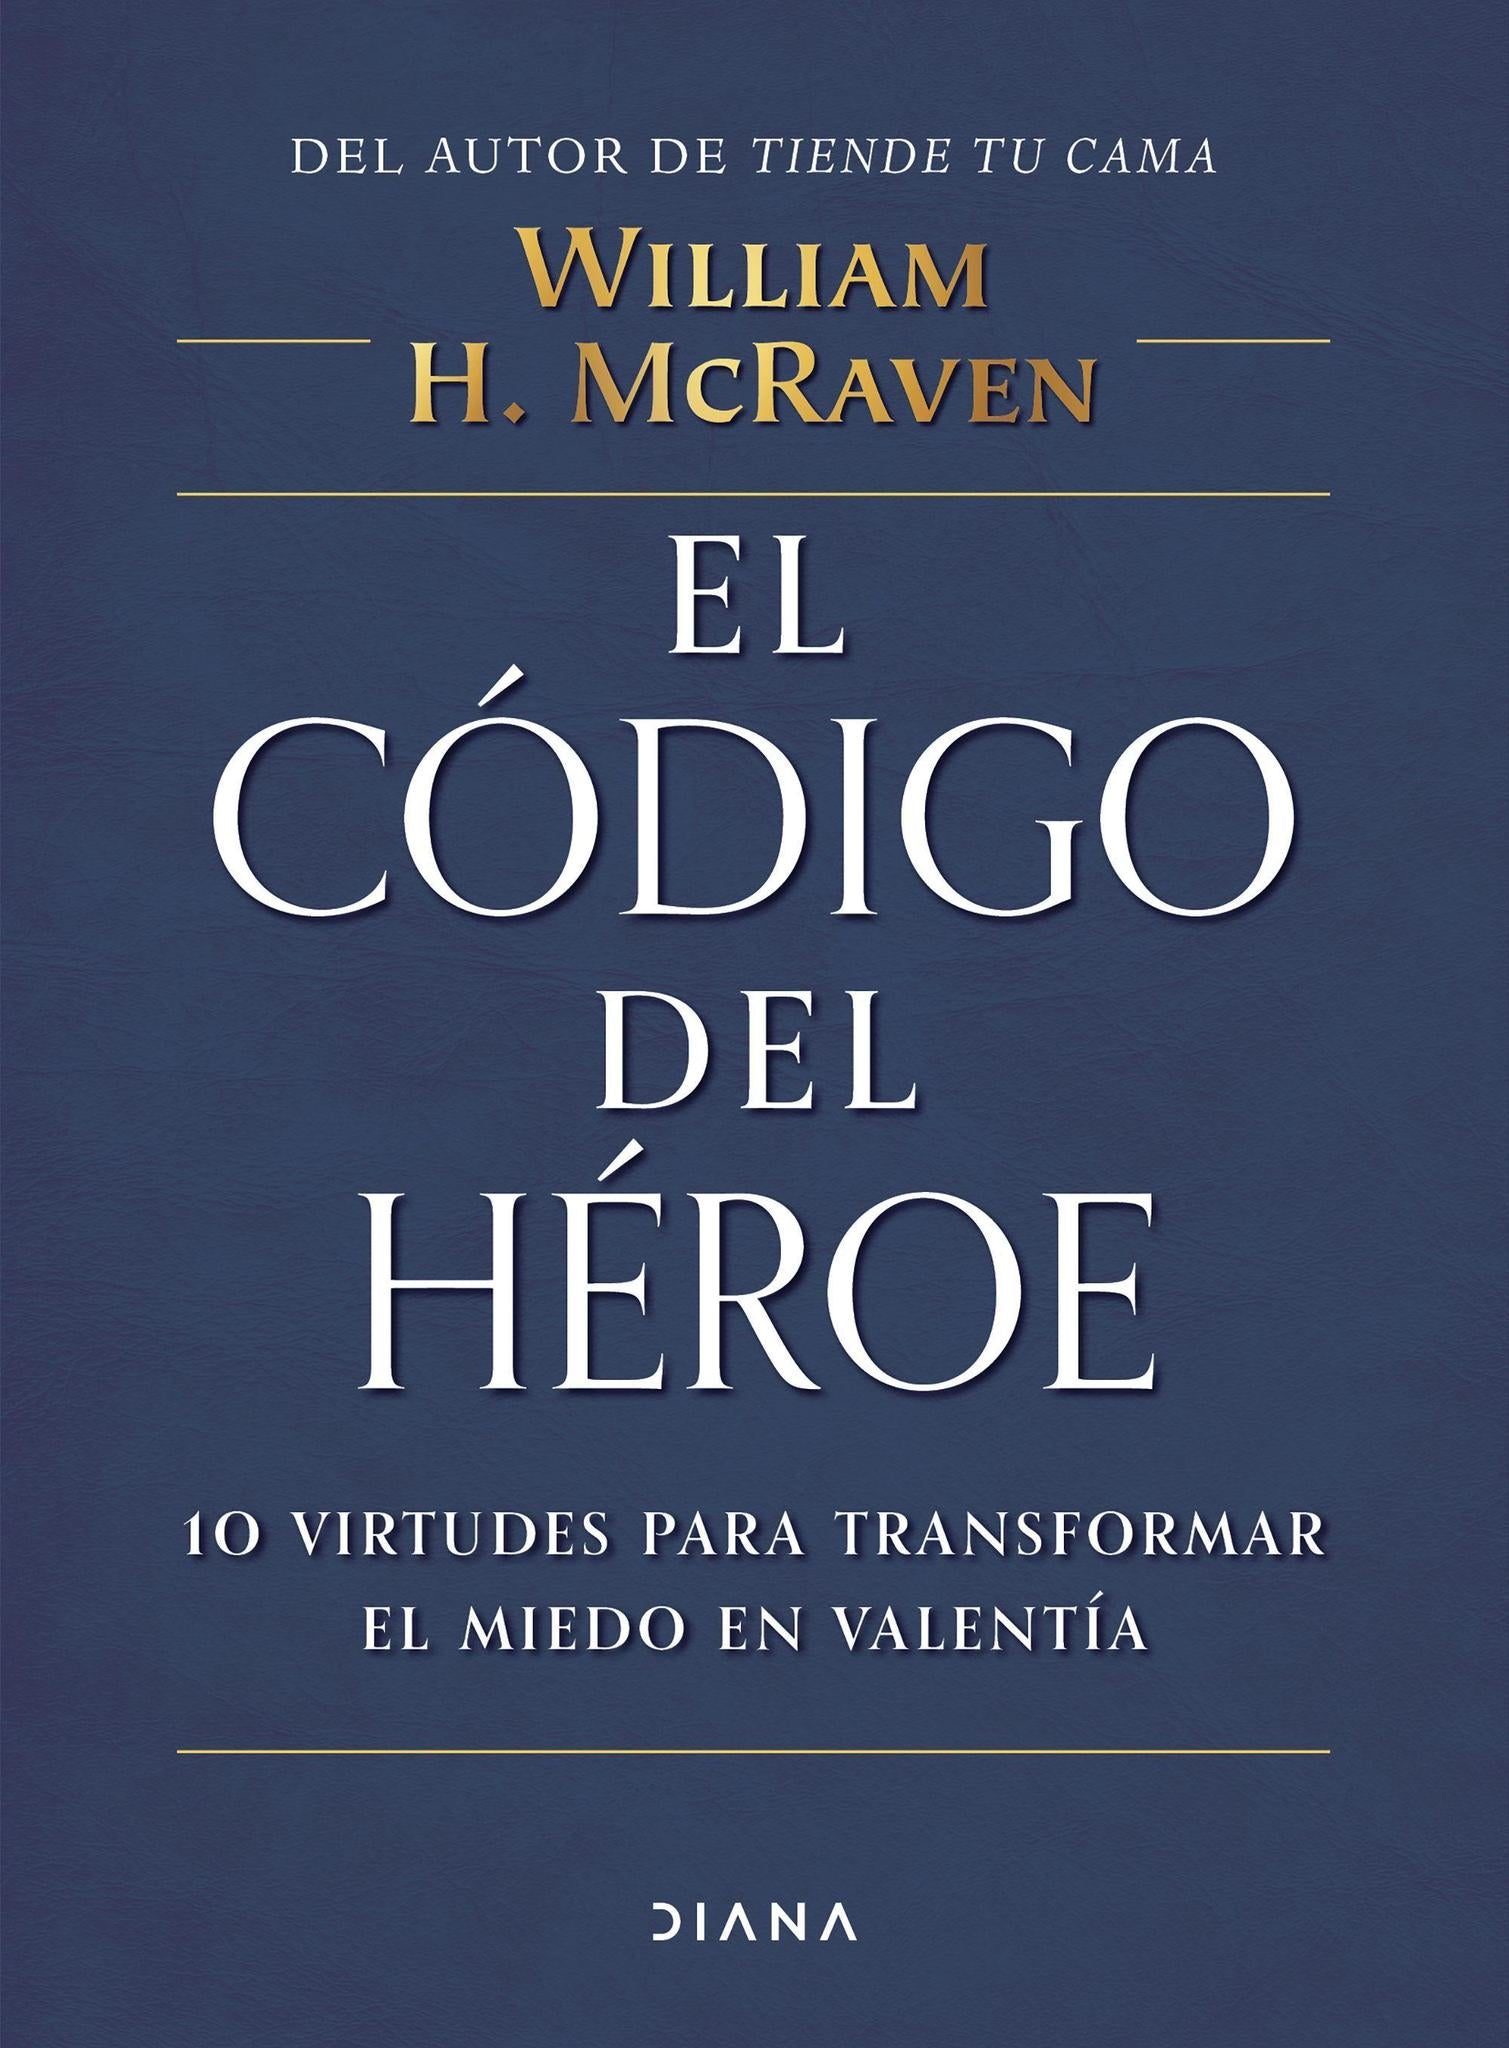 El Codigo del Heroe - William H. McRaven